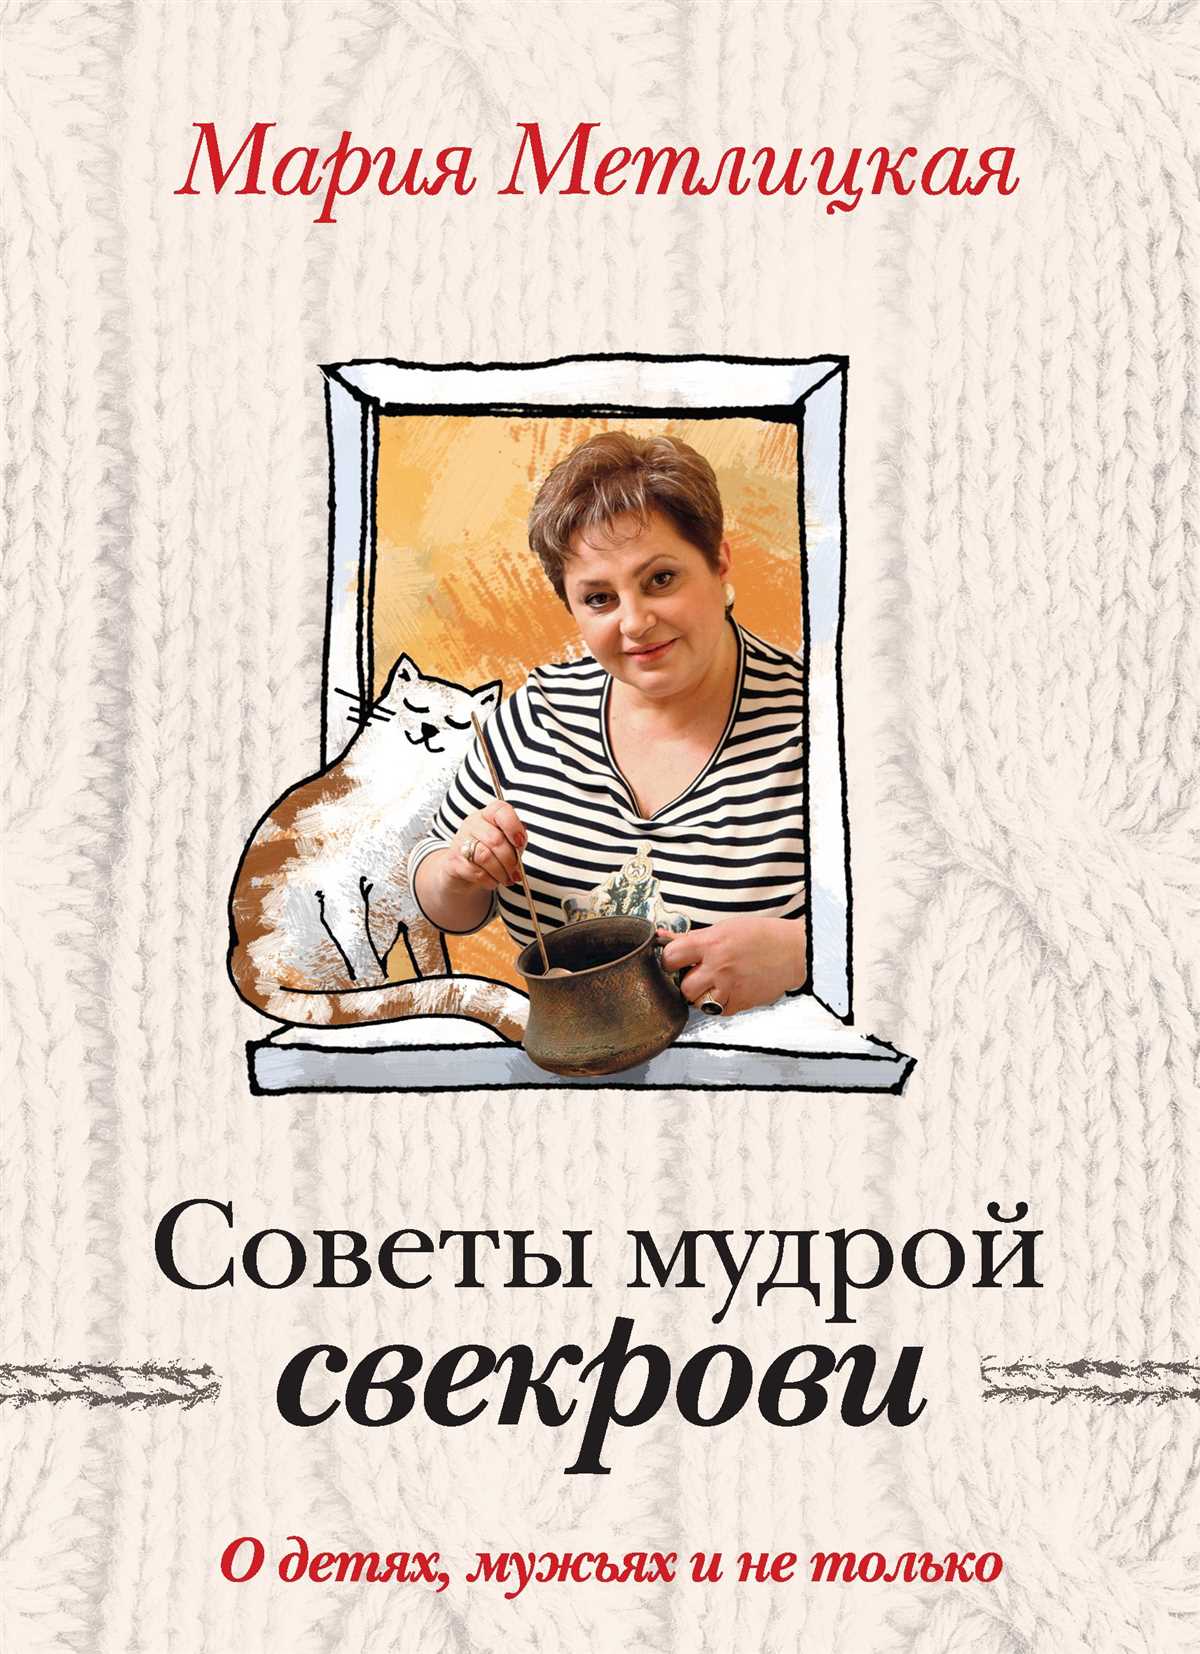 Метлицкая читать онлайн бесплатно фиалки на десерт